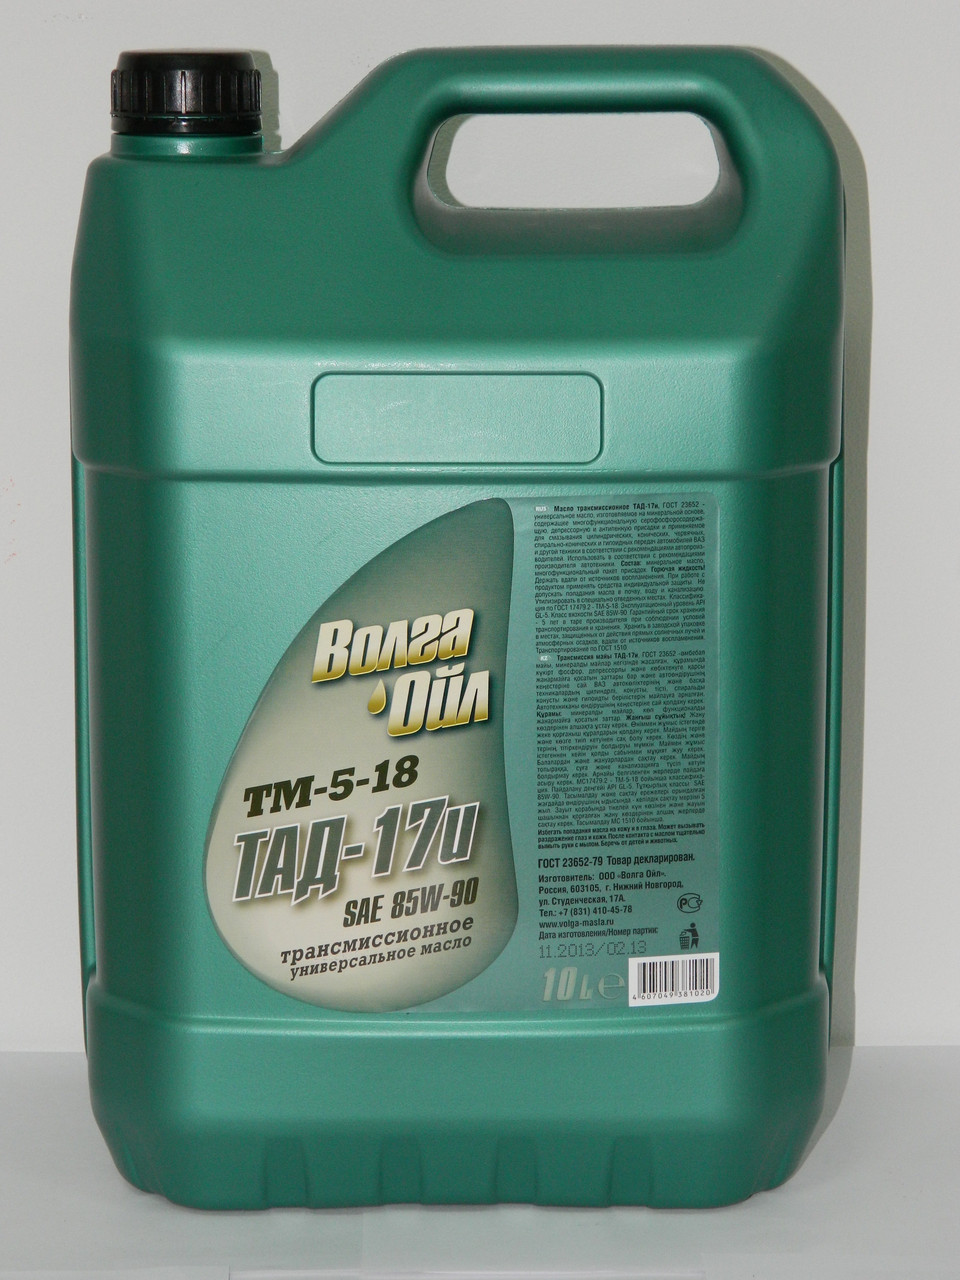 Трансмиссионное масло ТАД-17 (ТМ-5-18) (канистра 10 л.): продажа, цена .